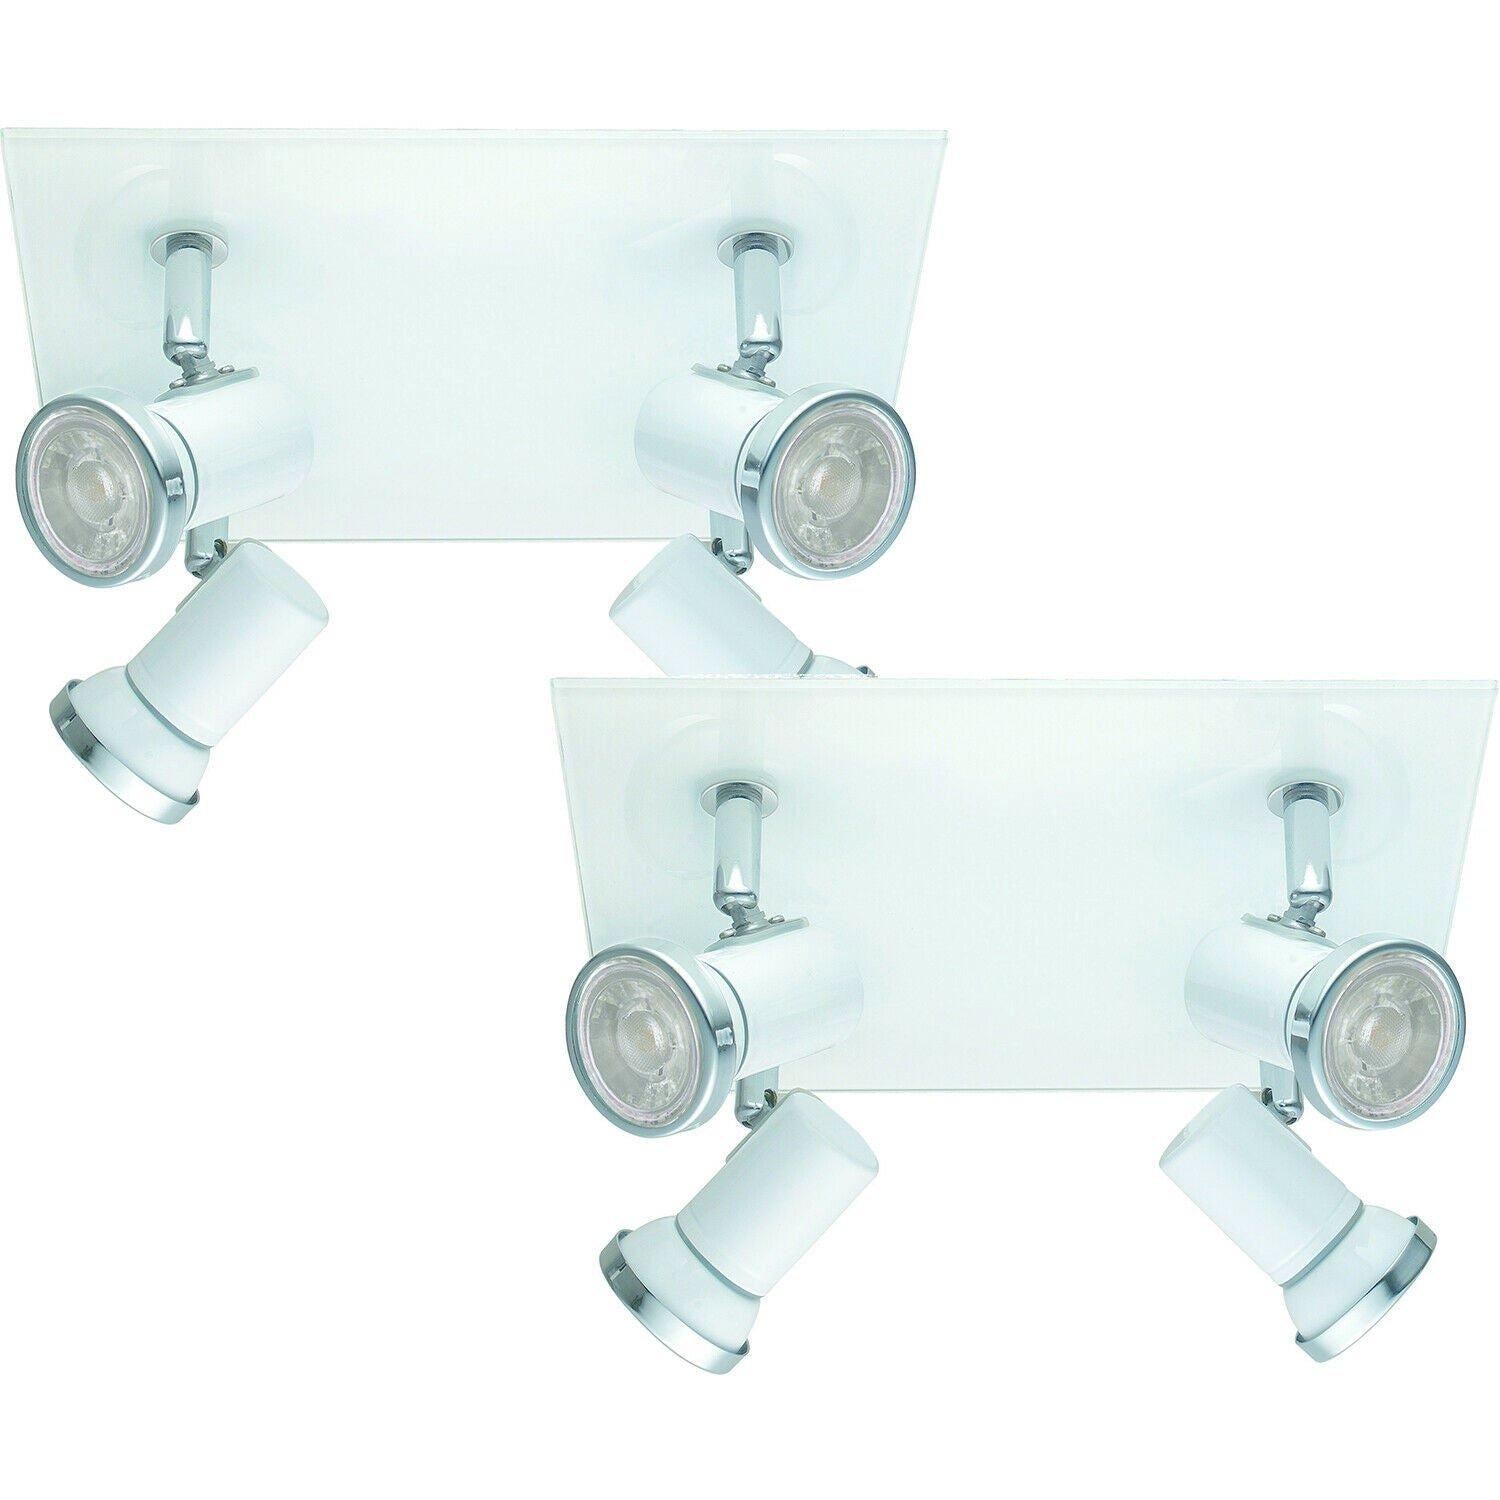 2 PACK Wall Flush Ceiling Light IP44 Bathroom Colour White Chrome GU10 4x3.3W